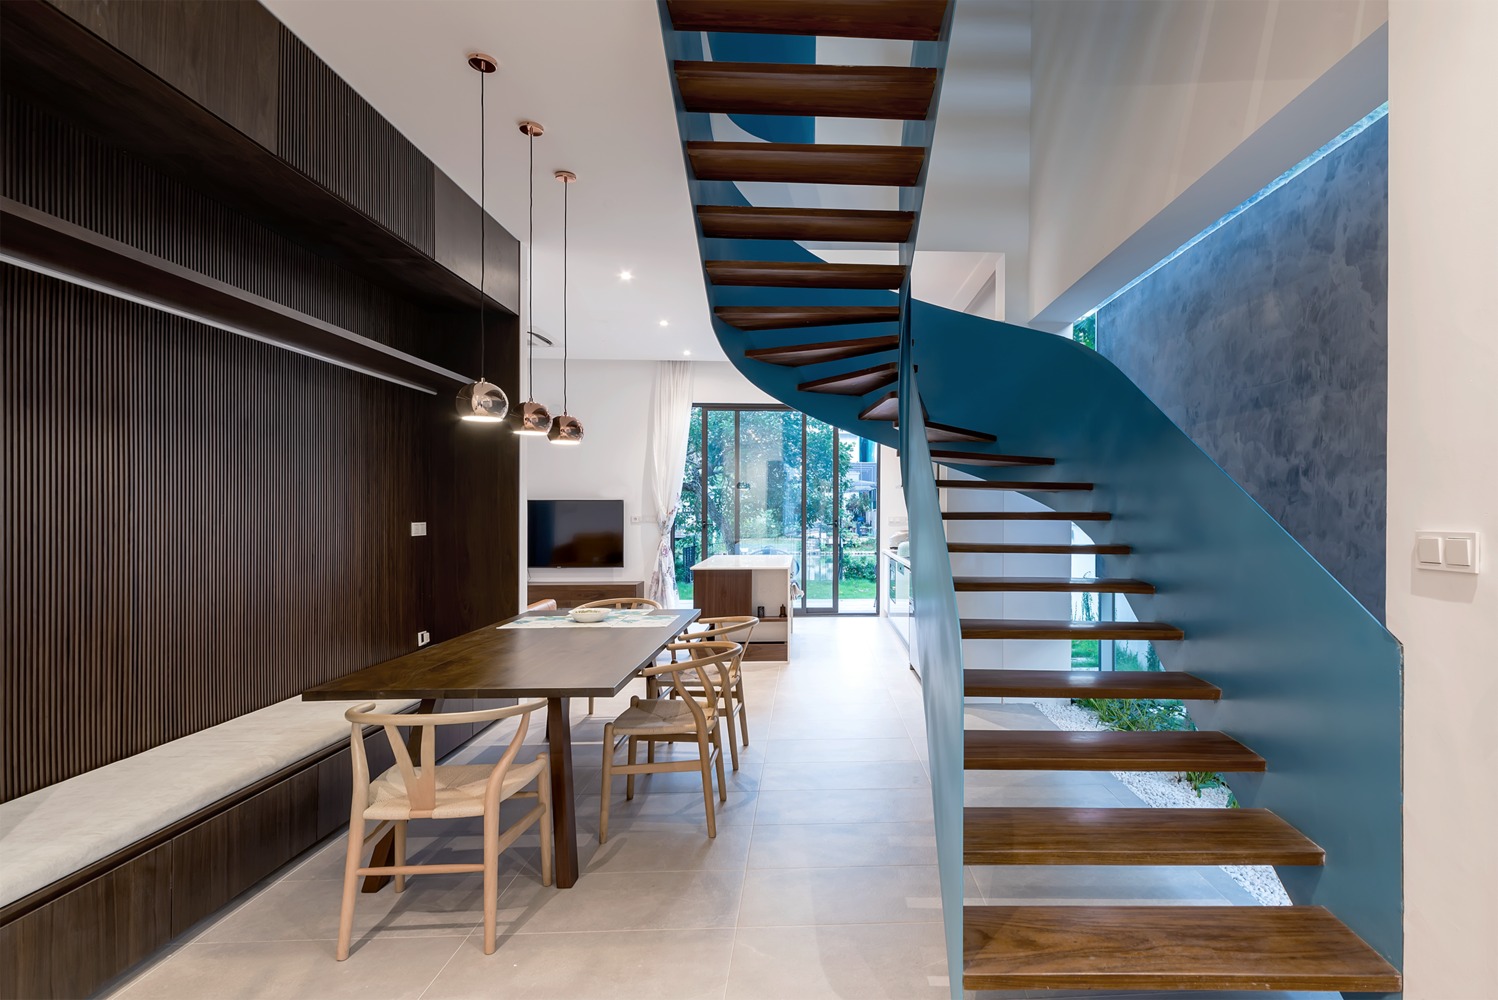 Hình ảnh toàn cảnh phòng ăn cạnh cầu thang với bàn ghế gỗ, băng ghế dài bọc nệm gắn tường ốp gỗ sẫm màu